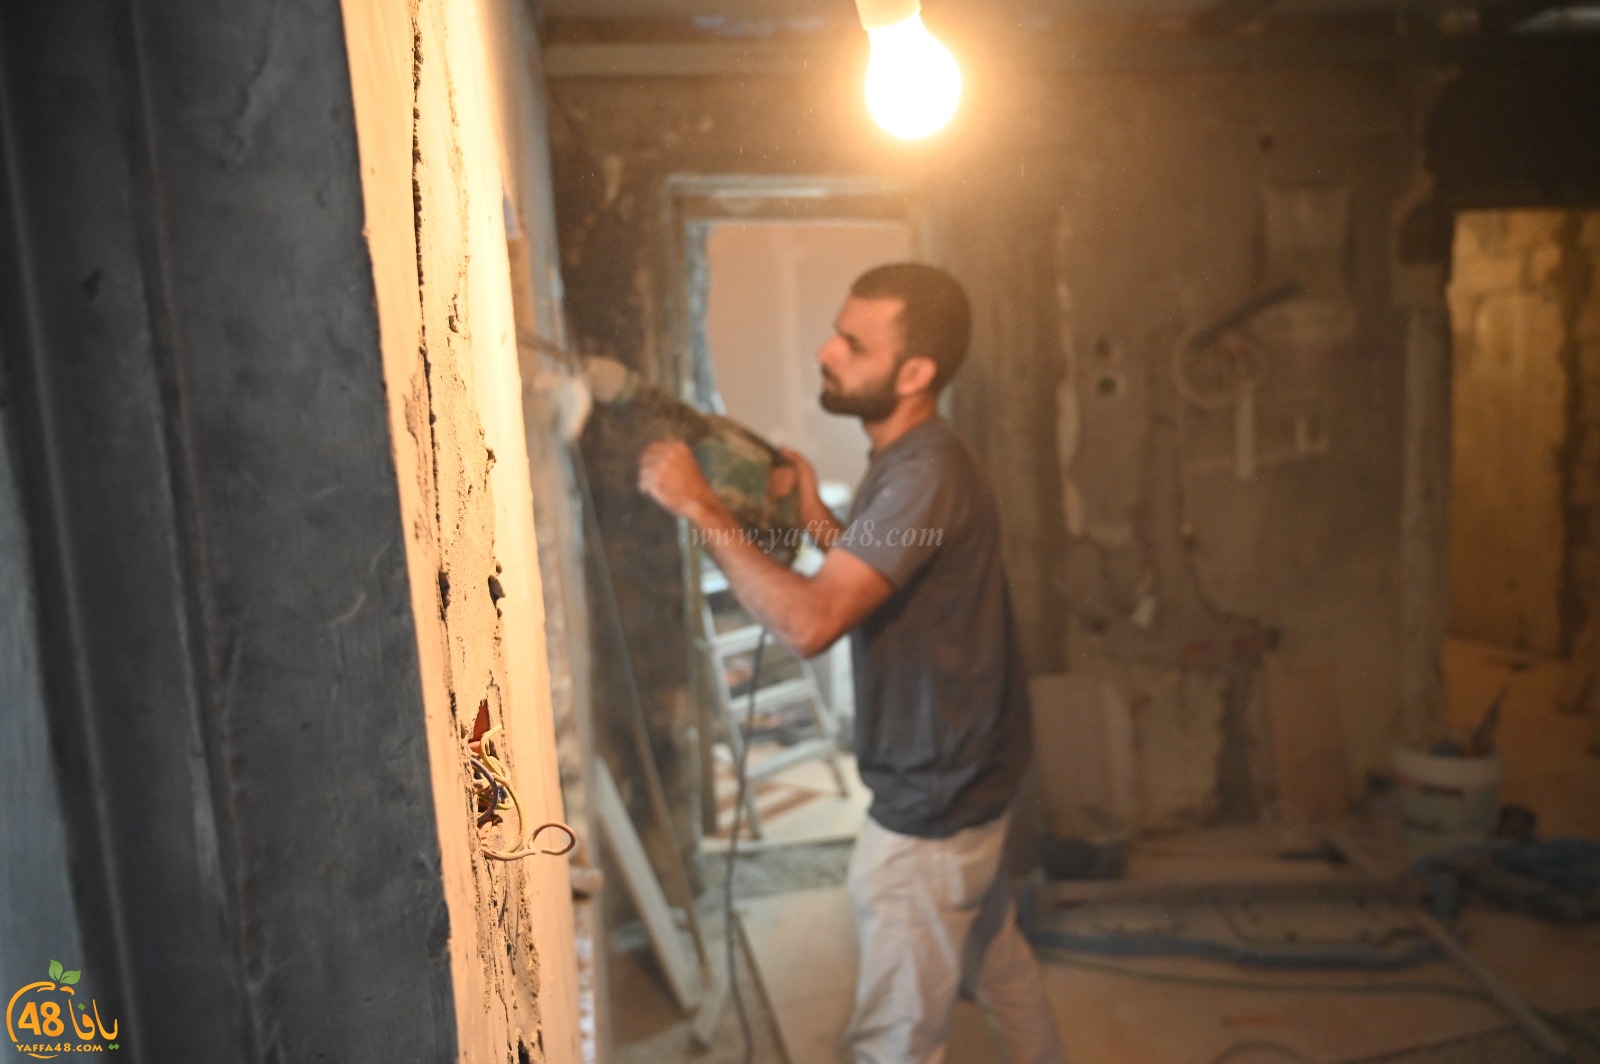 جمعية يافا تُنهي مشروع ترميم بيت محروق في حي العجمي